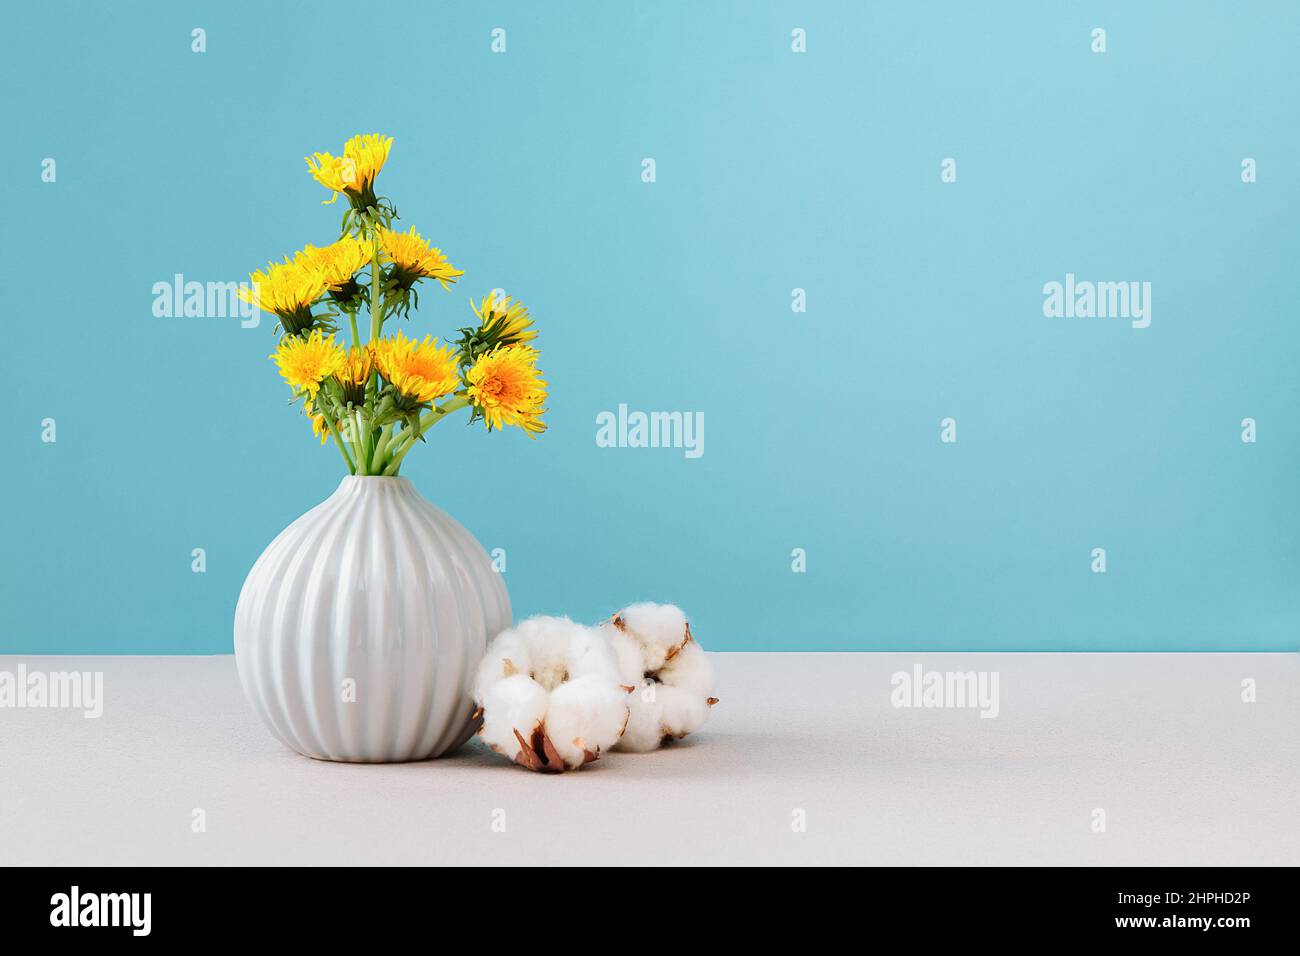 Gelbe Delelionen in Vase auf cyanfarbenem Hintergrund, Nahaufnahme, Kopierraum. Blumenstrauß sonnige Wildblumen-Elendelionen in Keramikvase in hellem Hintergrund. Stockfoto